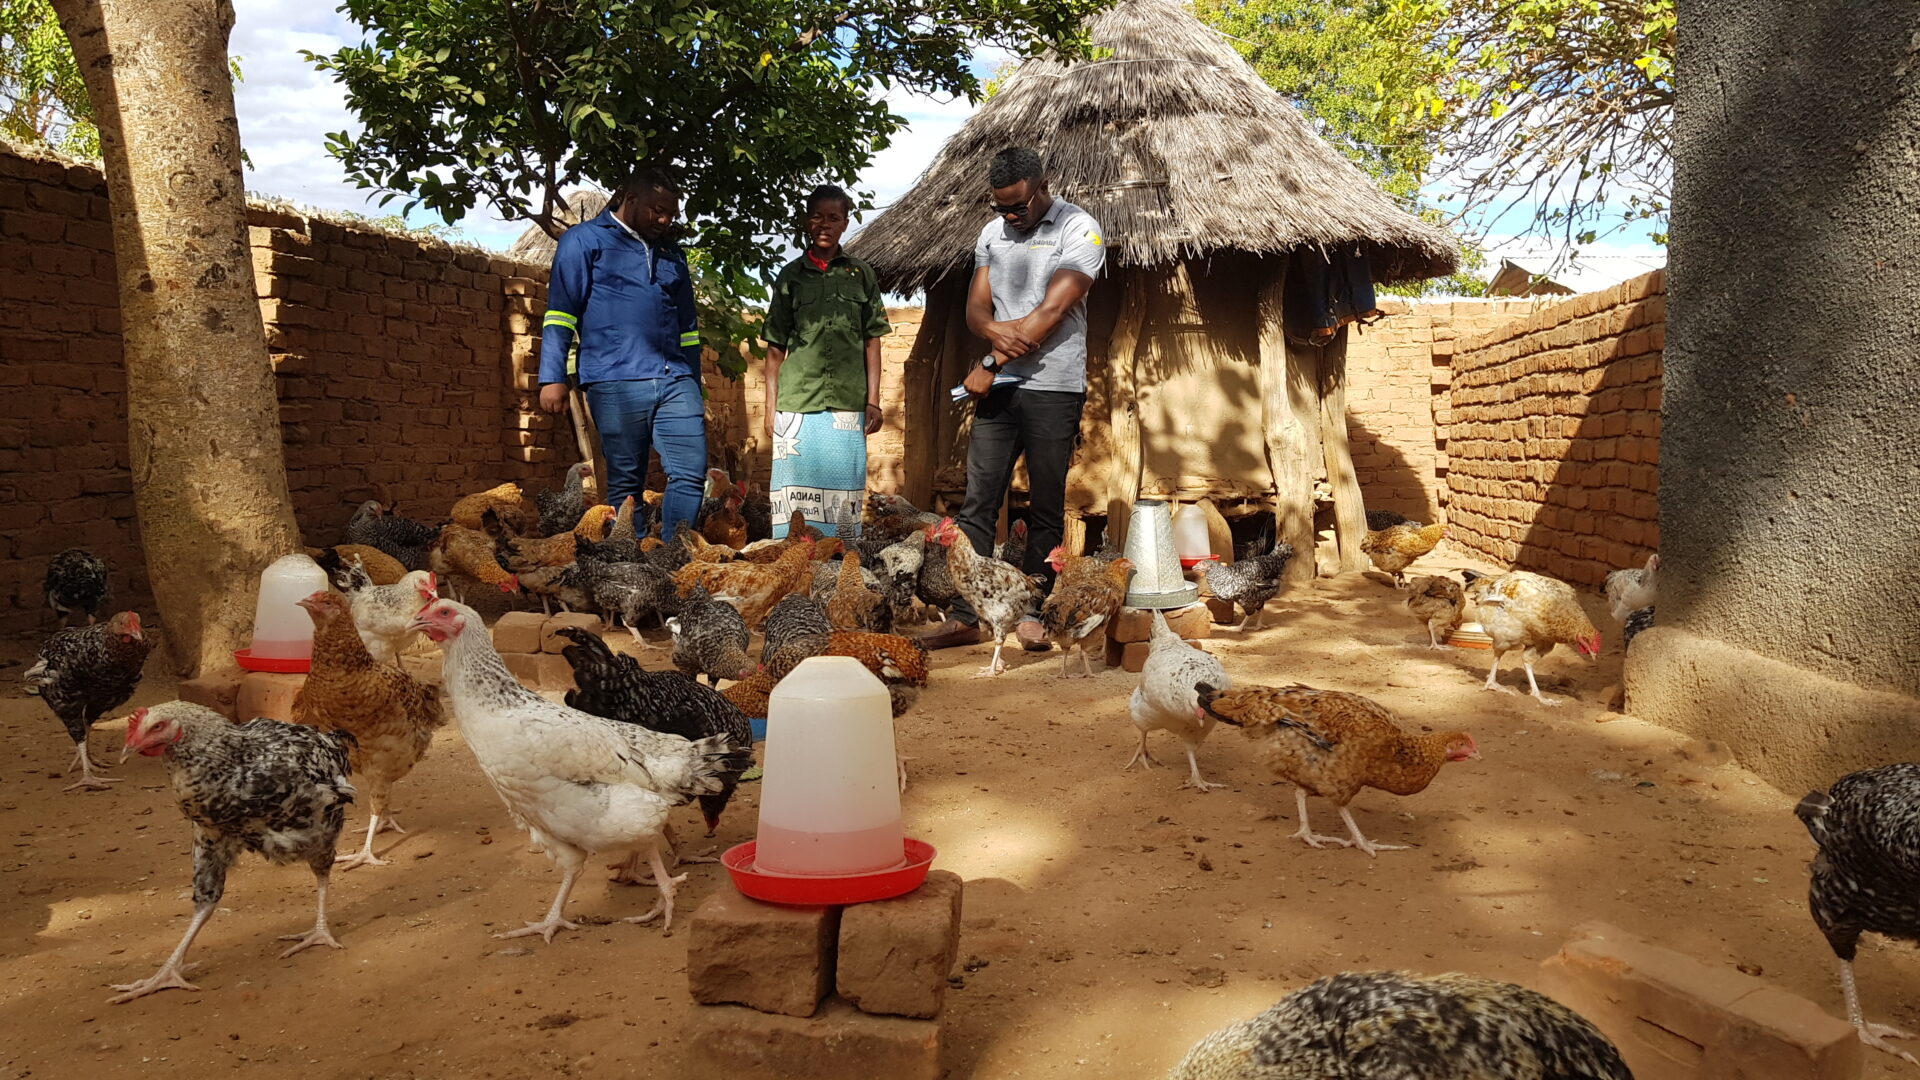 Geflügelzucht in Sambia; Projekt “K’FUYA” hat das Ziel, die Ernährungssicherheit und das Einkommen von 110 ländlichen Haushalten in Sambia zu verbessern. 